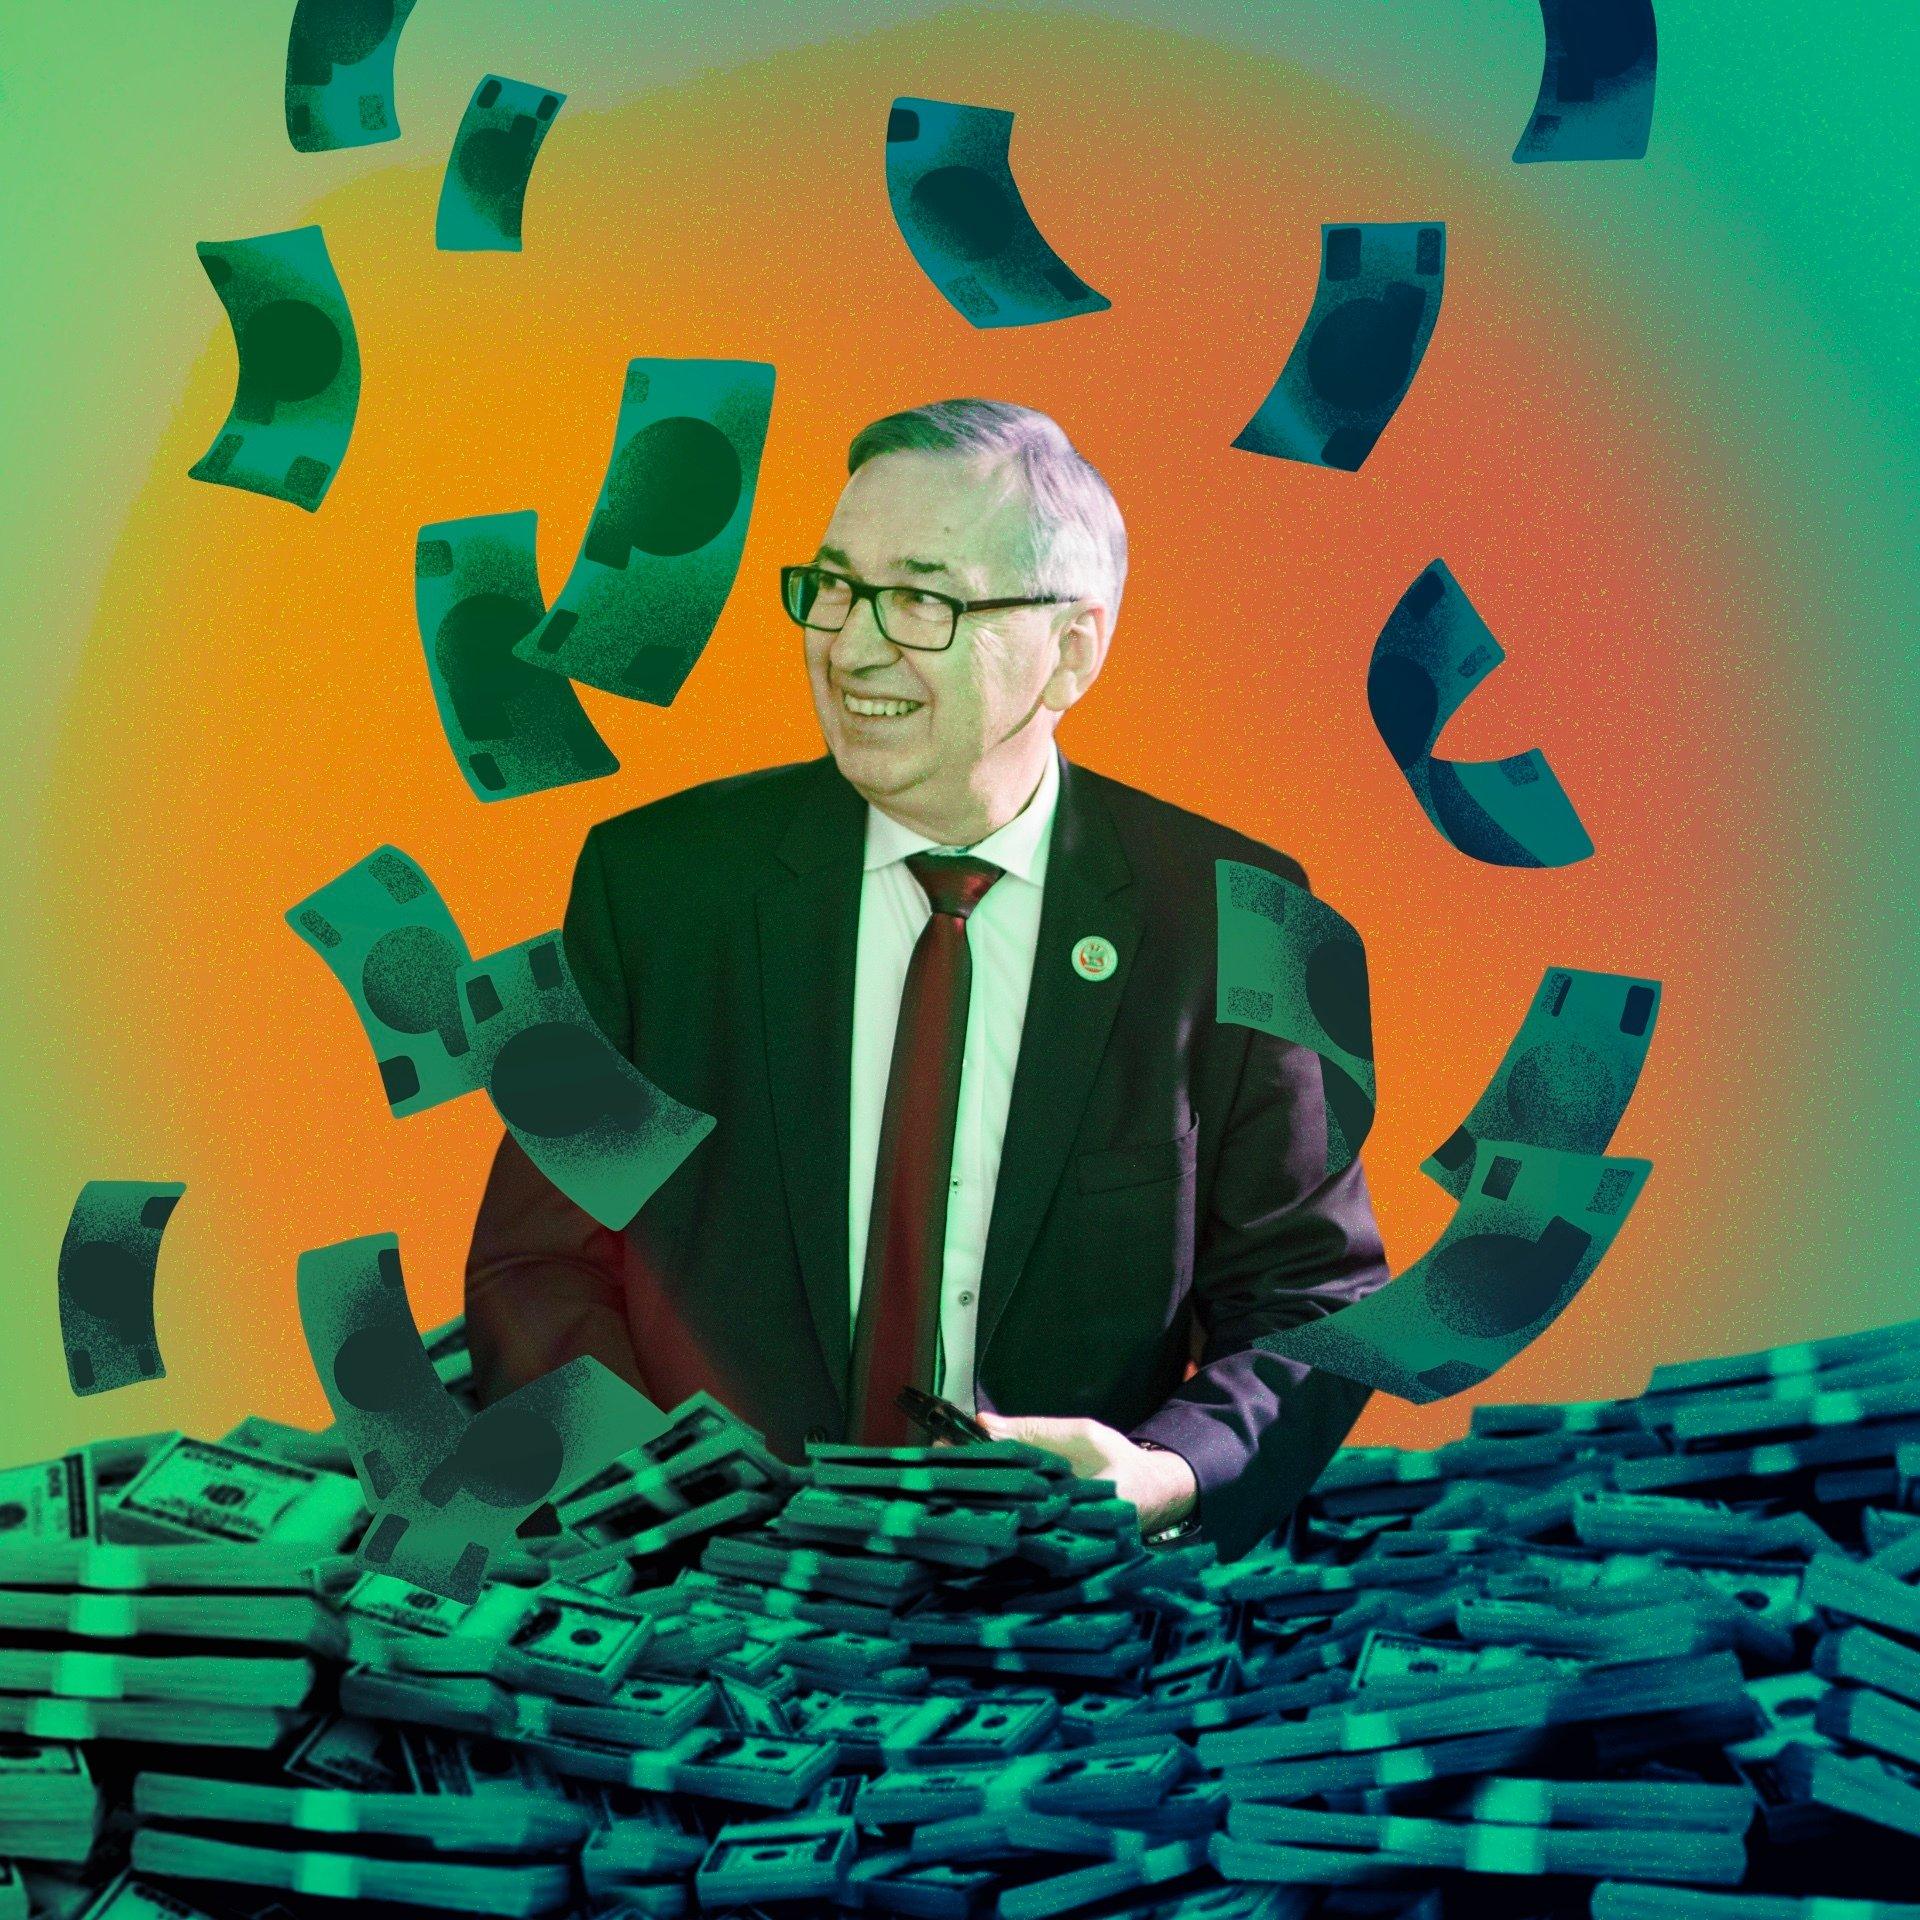 Ilustracja przedstawiająca roześmianego wiceministra Szweda, wokół którego fruwają banknoty.